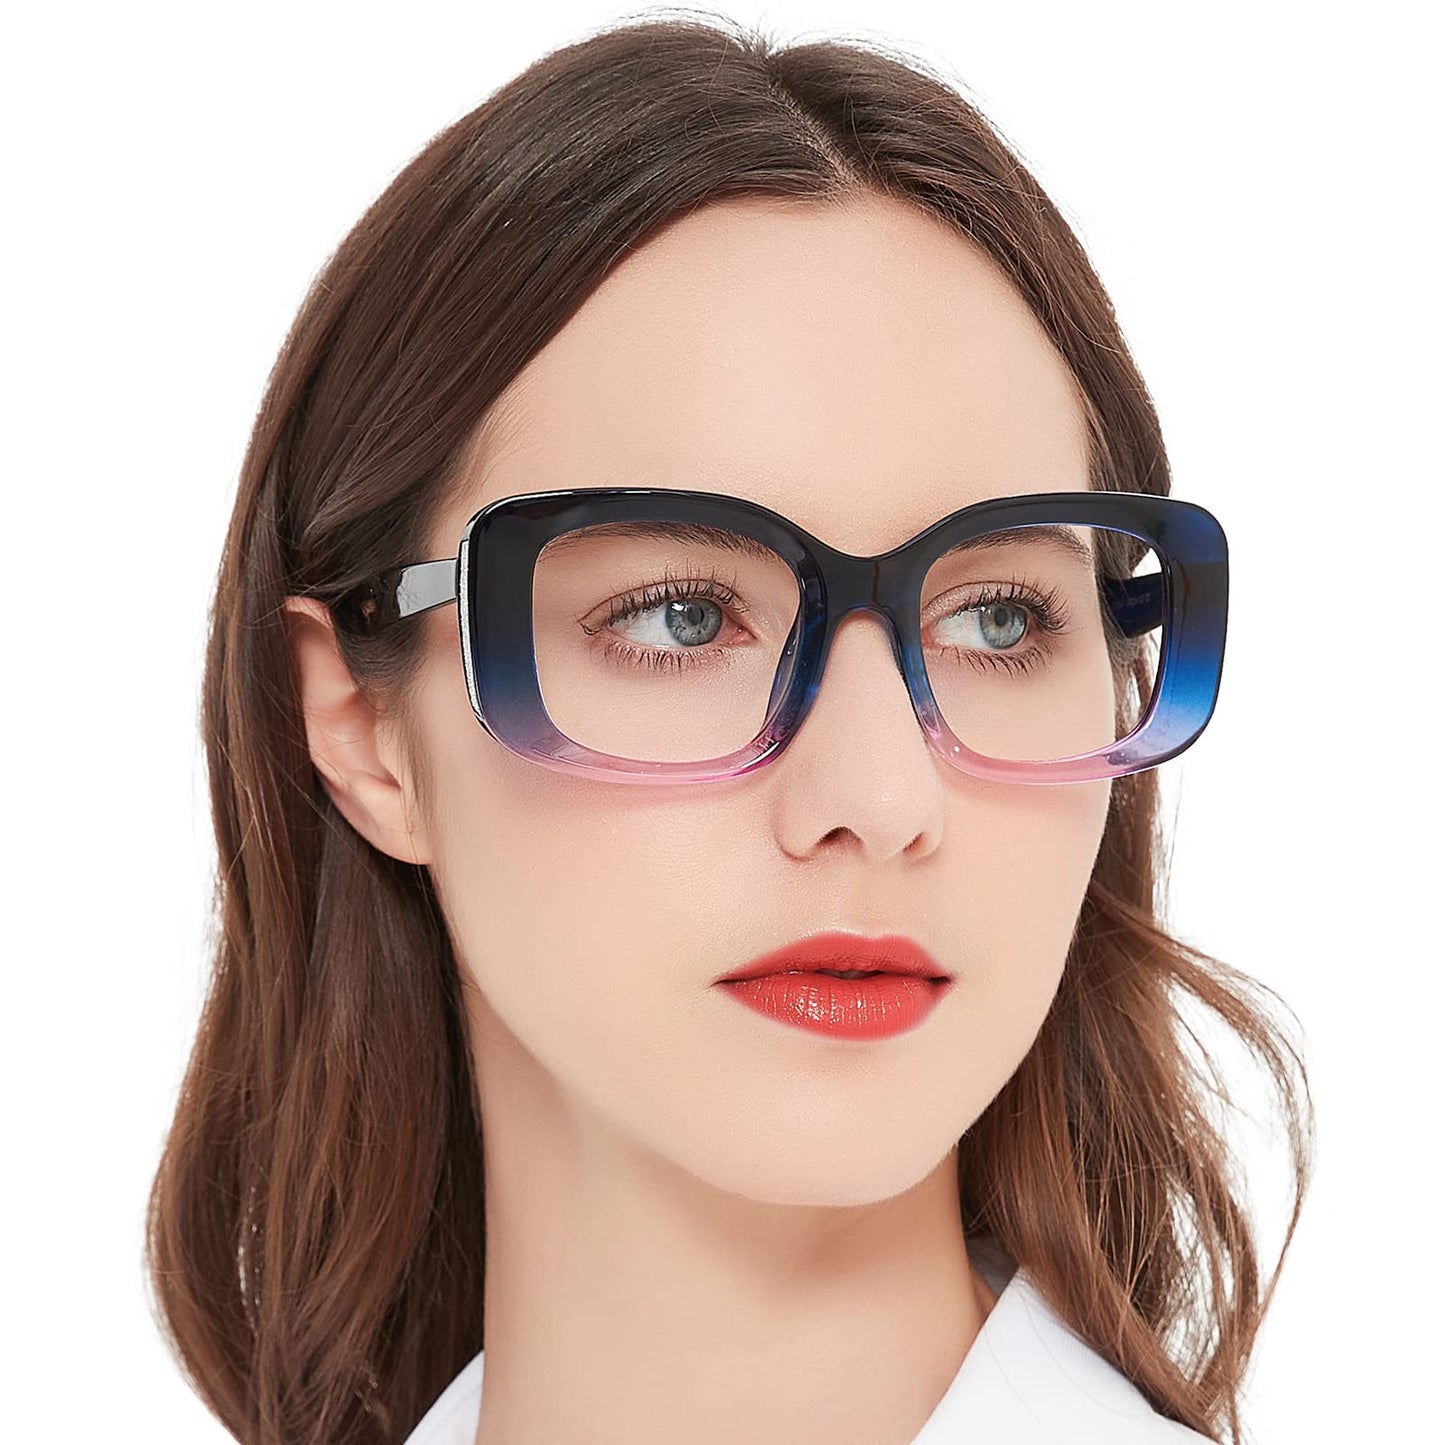 OCCI CHIARI Oversized Reading Glasses For Women Large Reader 1.0 1.5 2.0 2.5 3.0 3.5 4.0 5.0 6.0